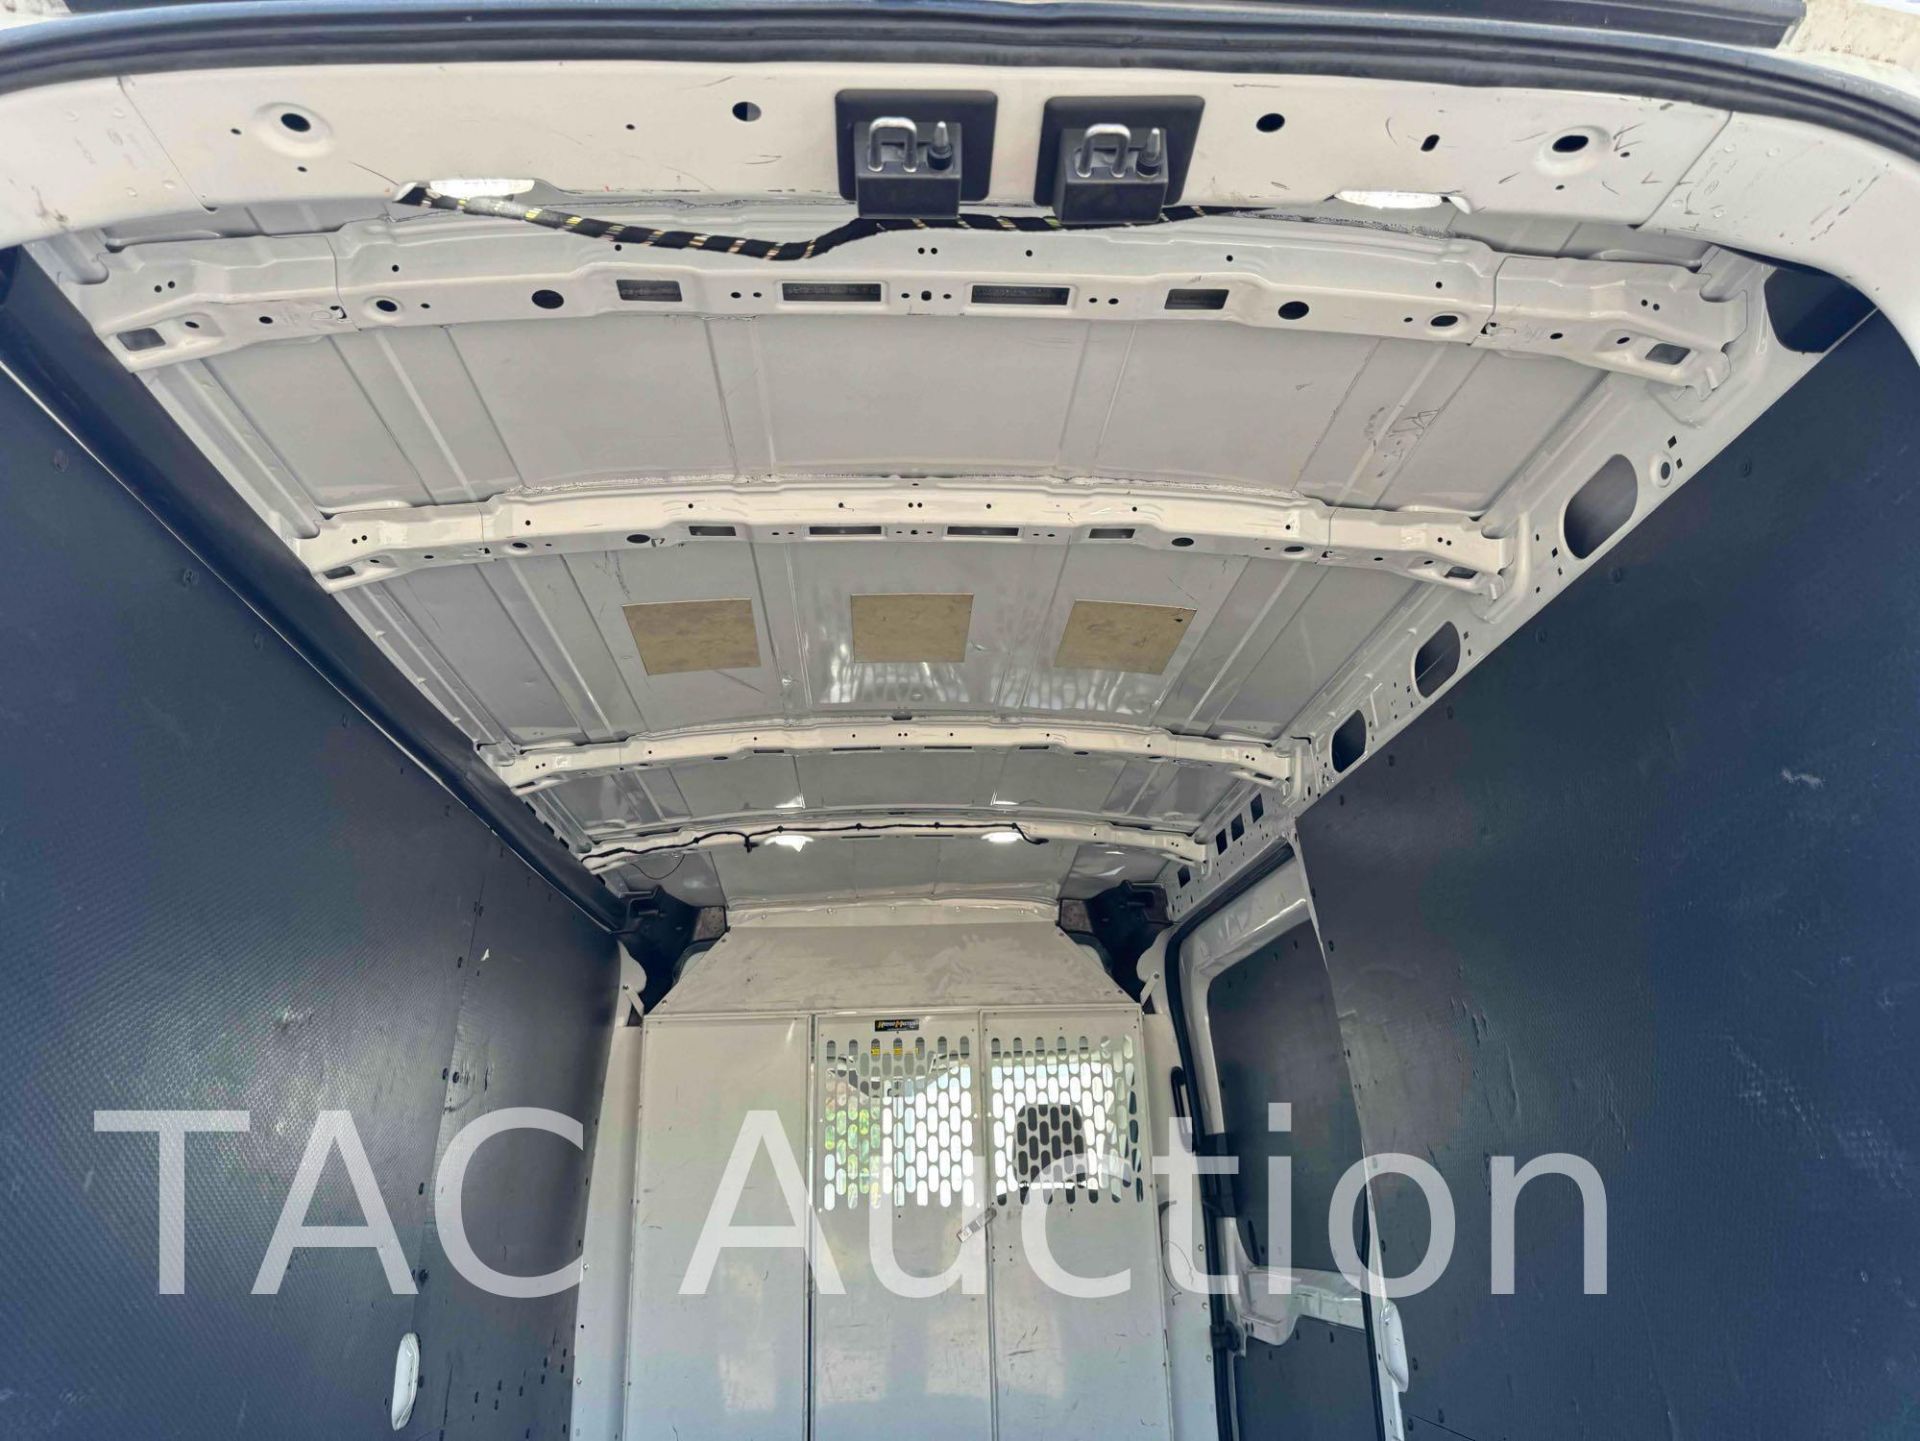 2019 Ford Transit 150 Cargo Van - Image 25 of 43